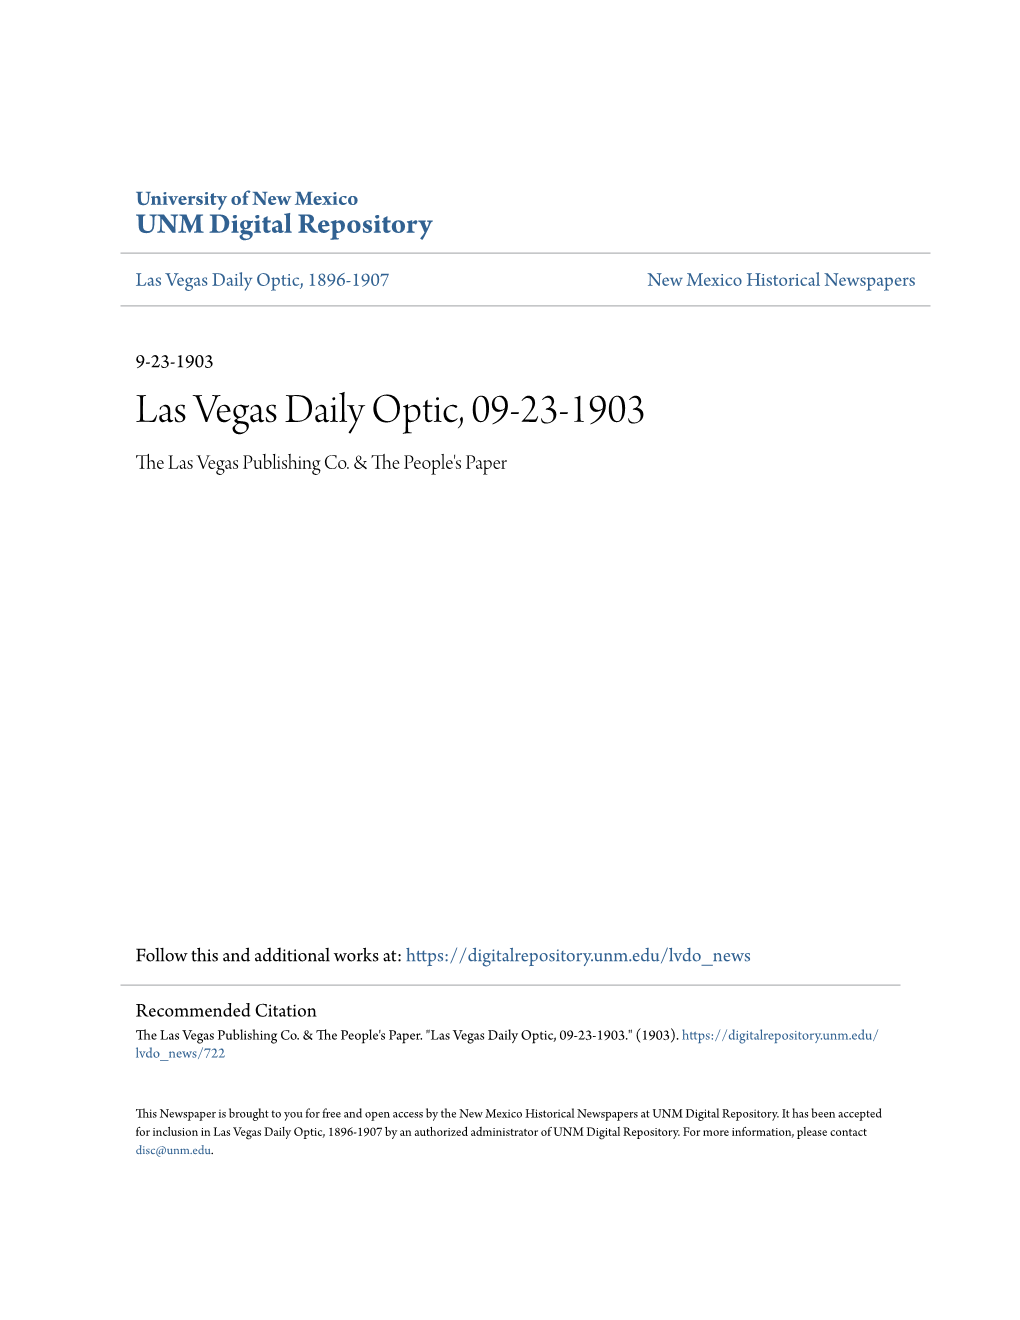 Las Vegas Daily Optic, 09-23-1903 the Las Vegas Publishing Co